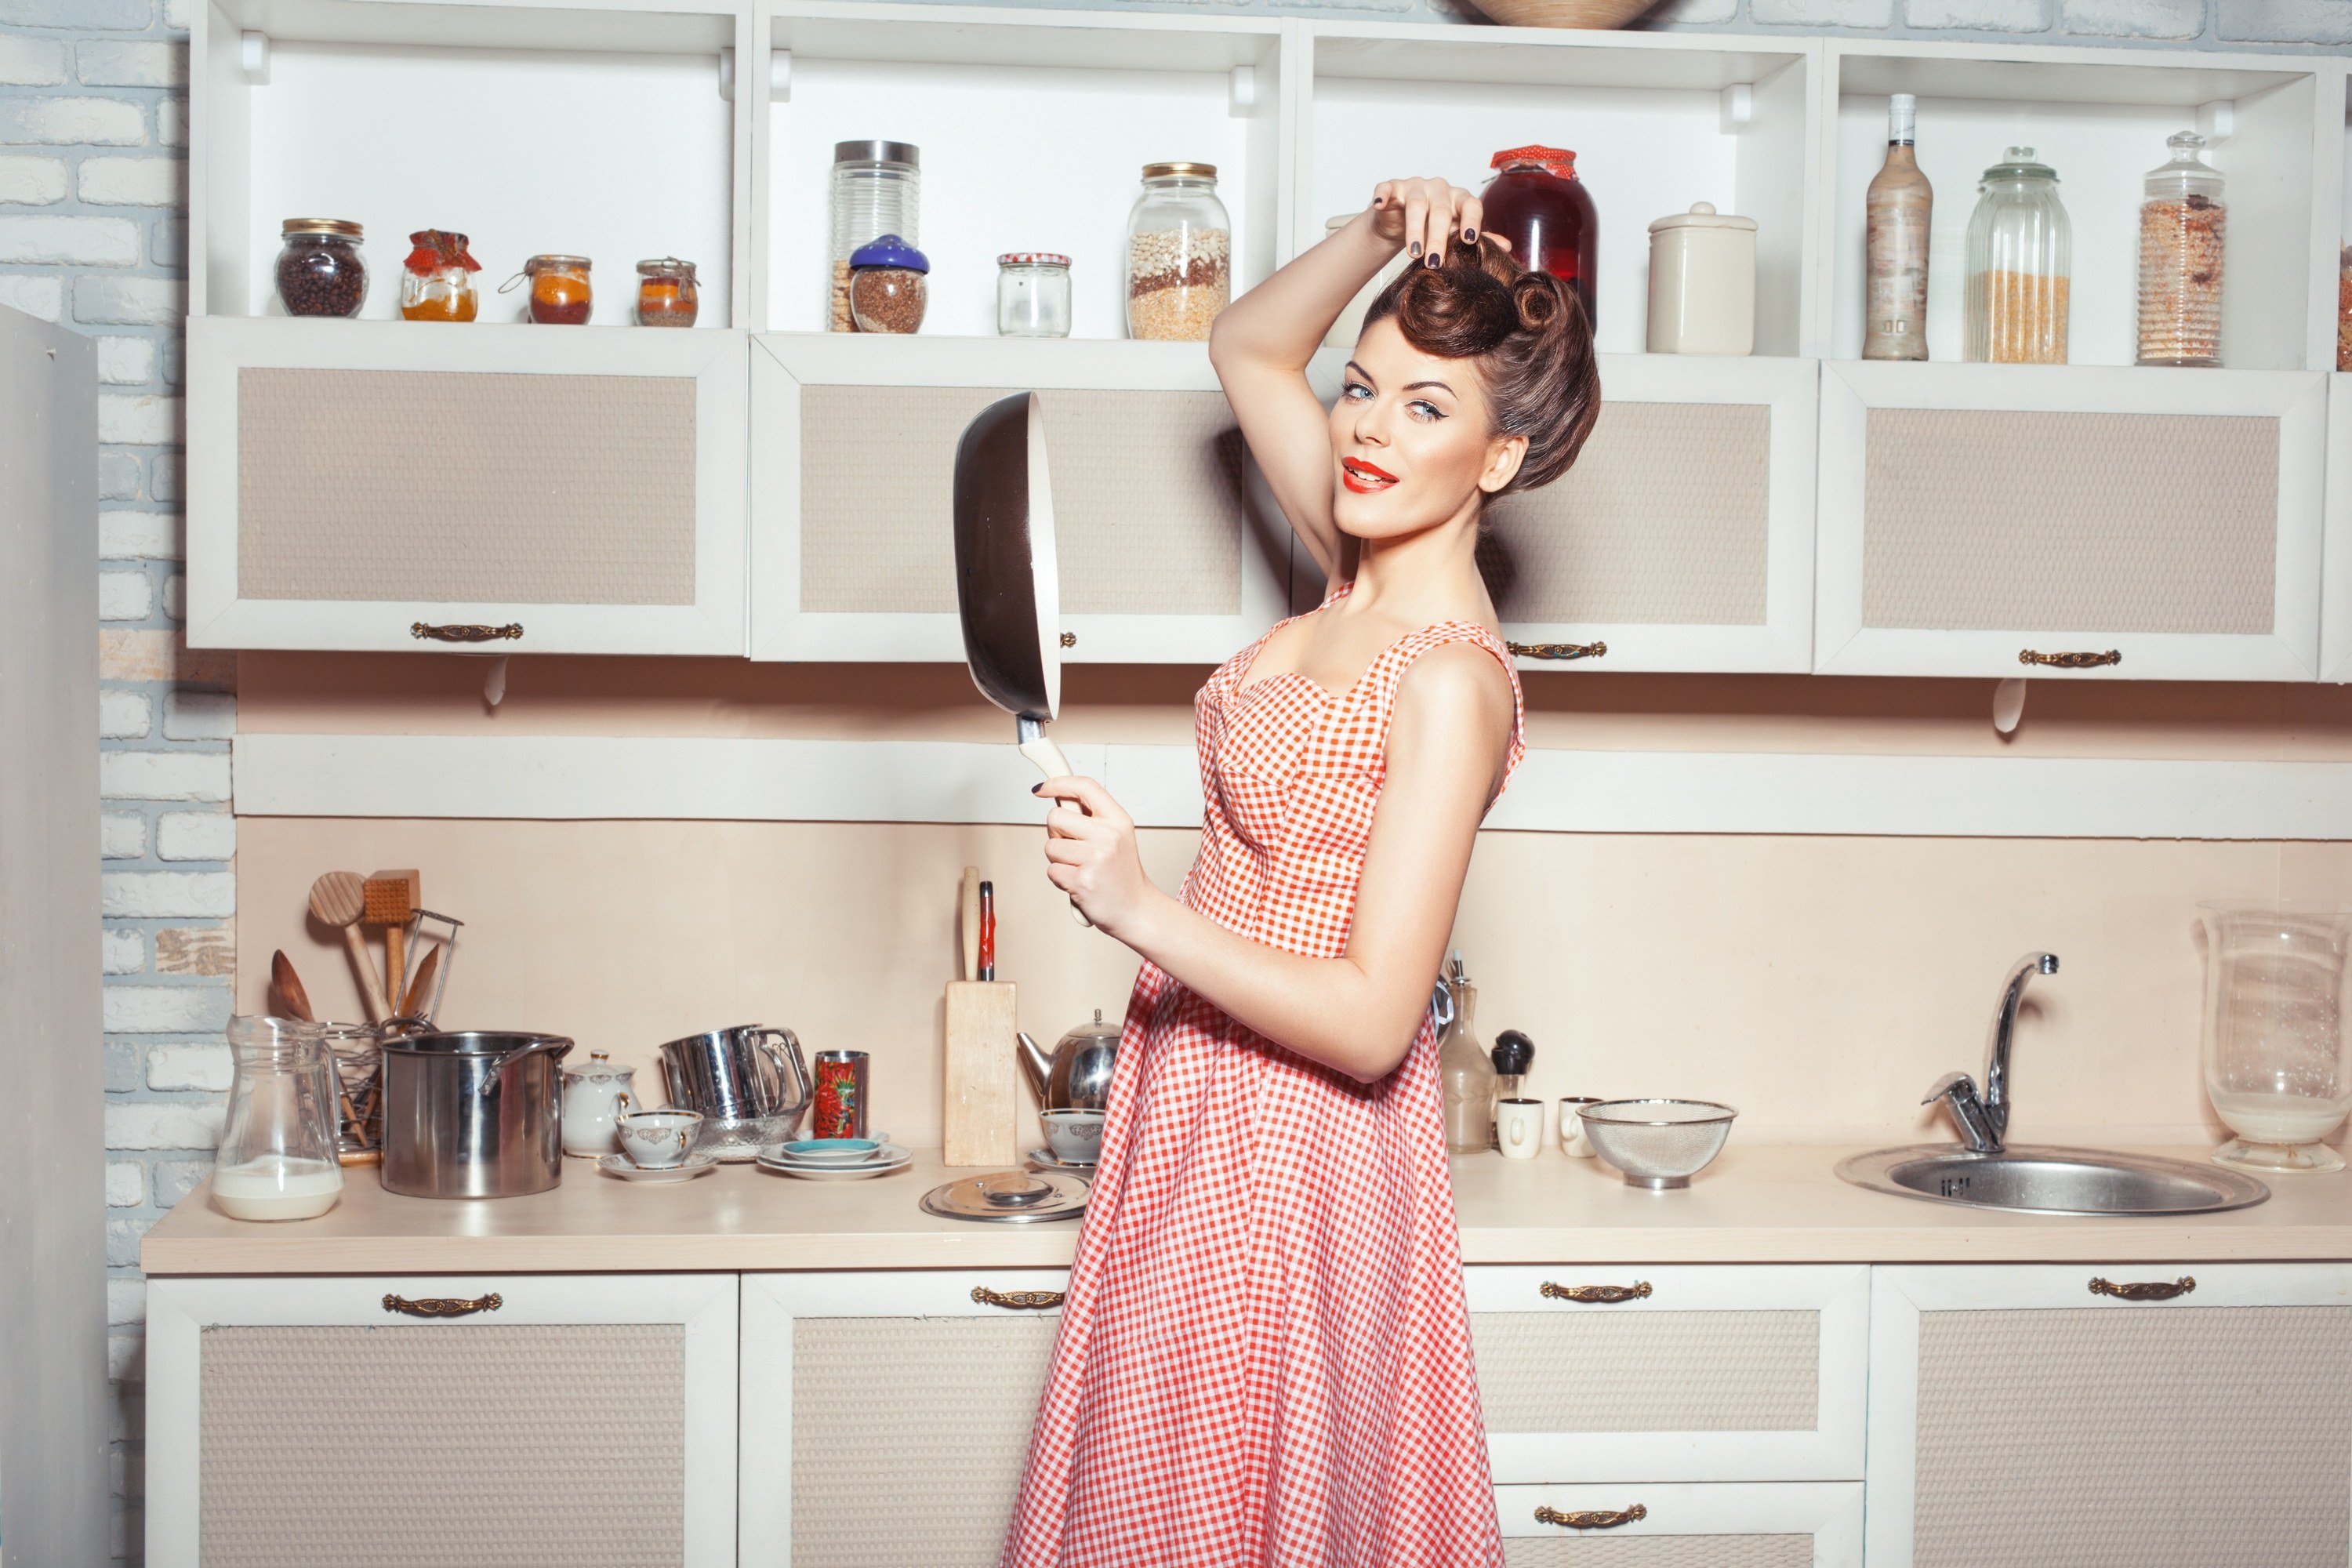 Включи то на кухне. Фотосессия на кухне. Красивая девушка на кухне. Образ домохозяйки. Красивая фотосессия на кухне.